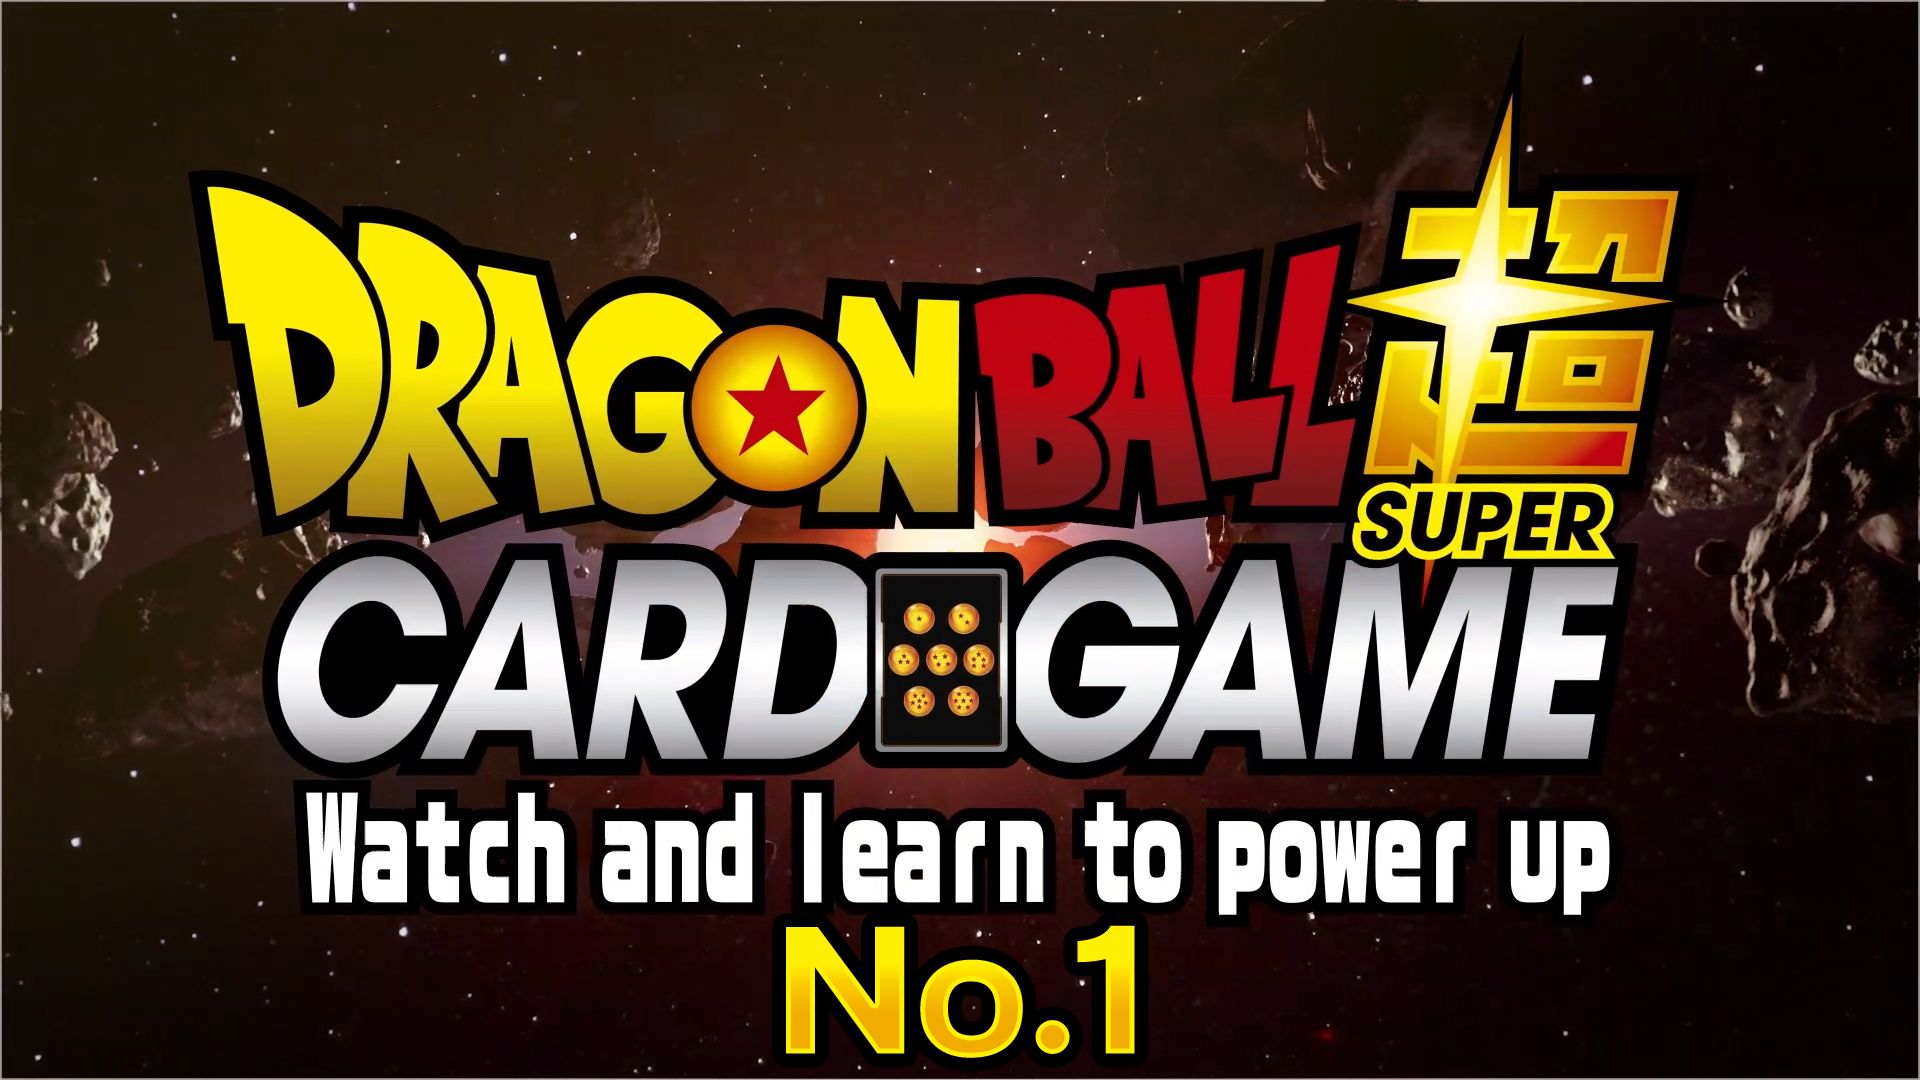 ドラゴンボール超カードゲーム Watch and learn to power up！ No.1